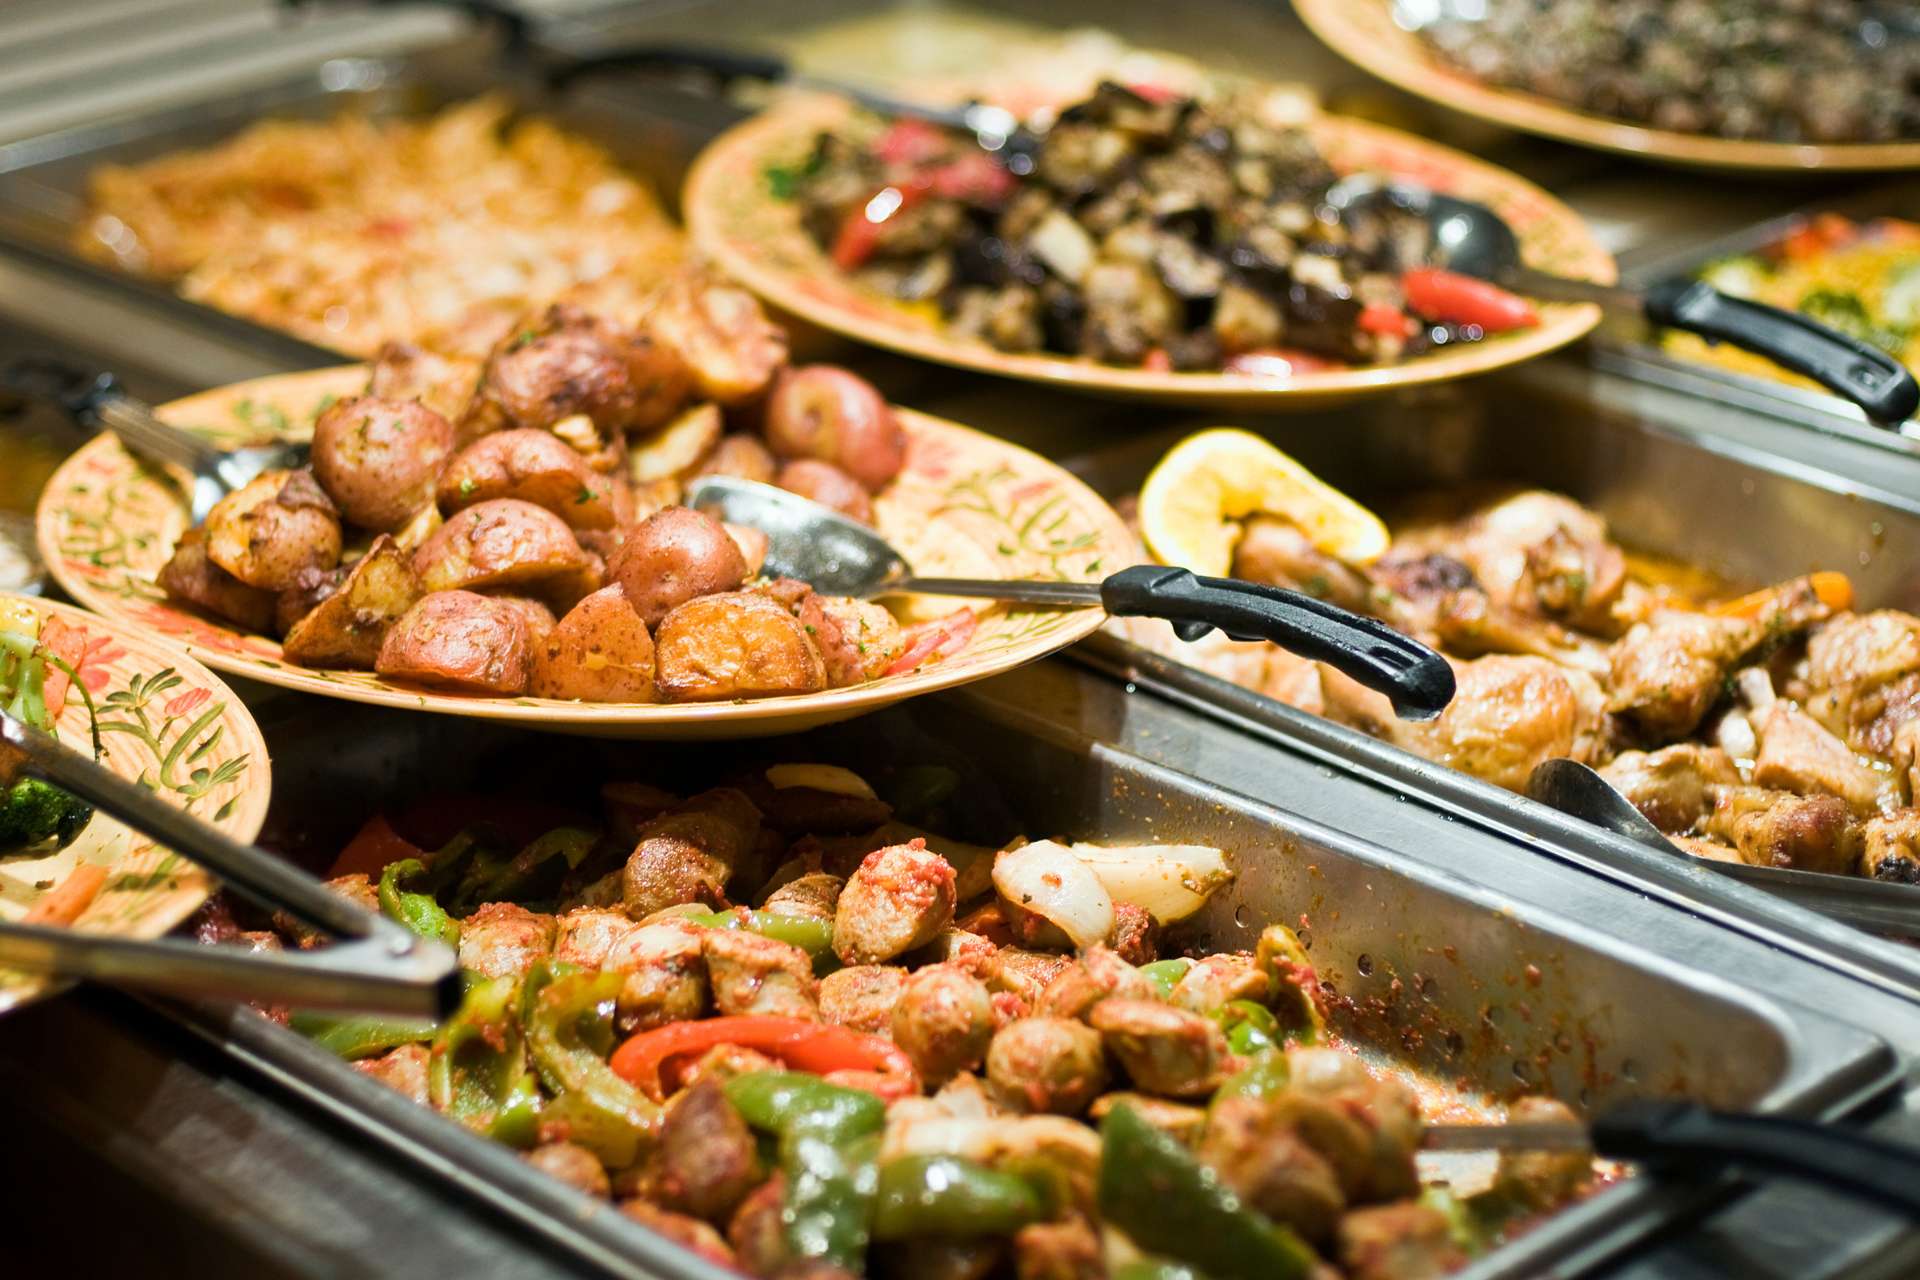 Gastrokardijalni sindrom se obično javlja u kombinaciji sa obilnim obrokom